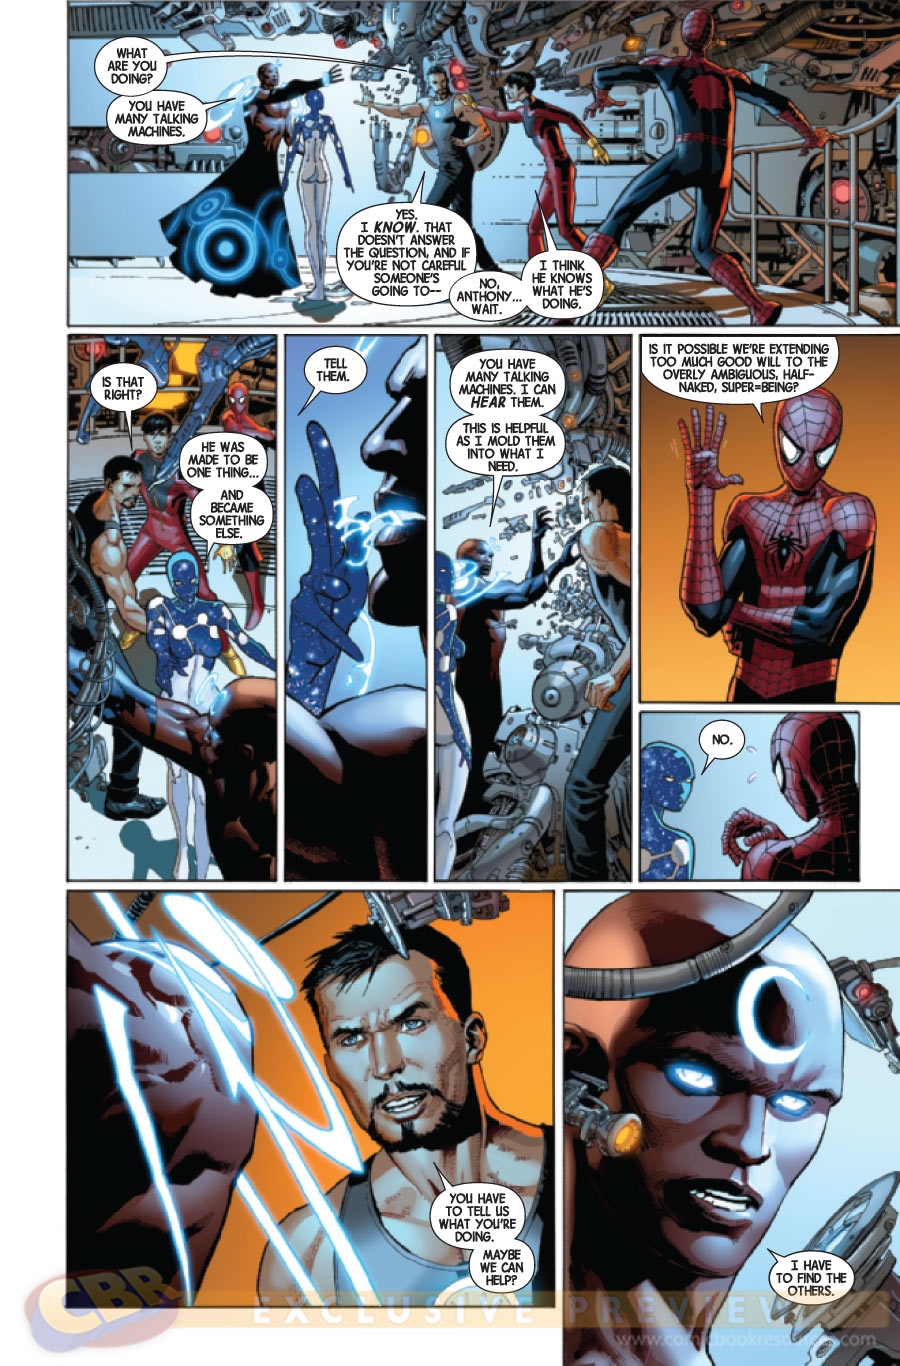 Preview de Avengers #7 - Vingadores - Jonathan Hickman - Blog Farofeiros